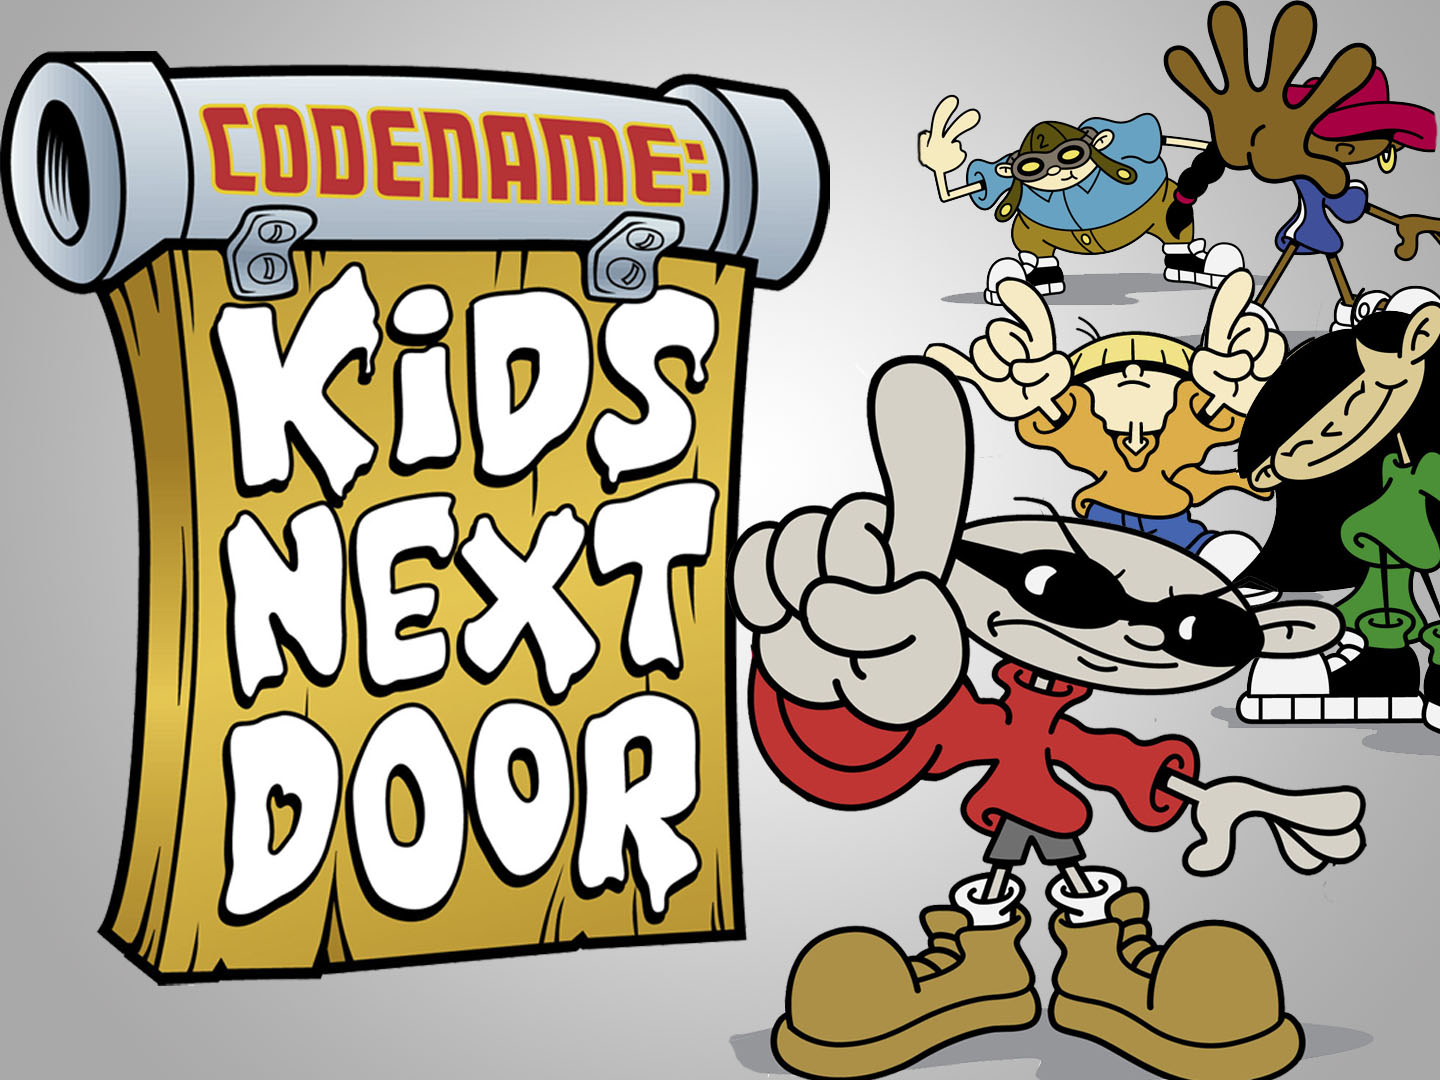 codename kids next door logo